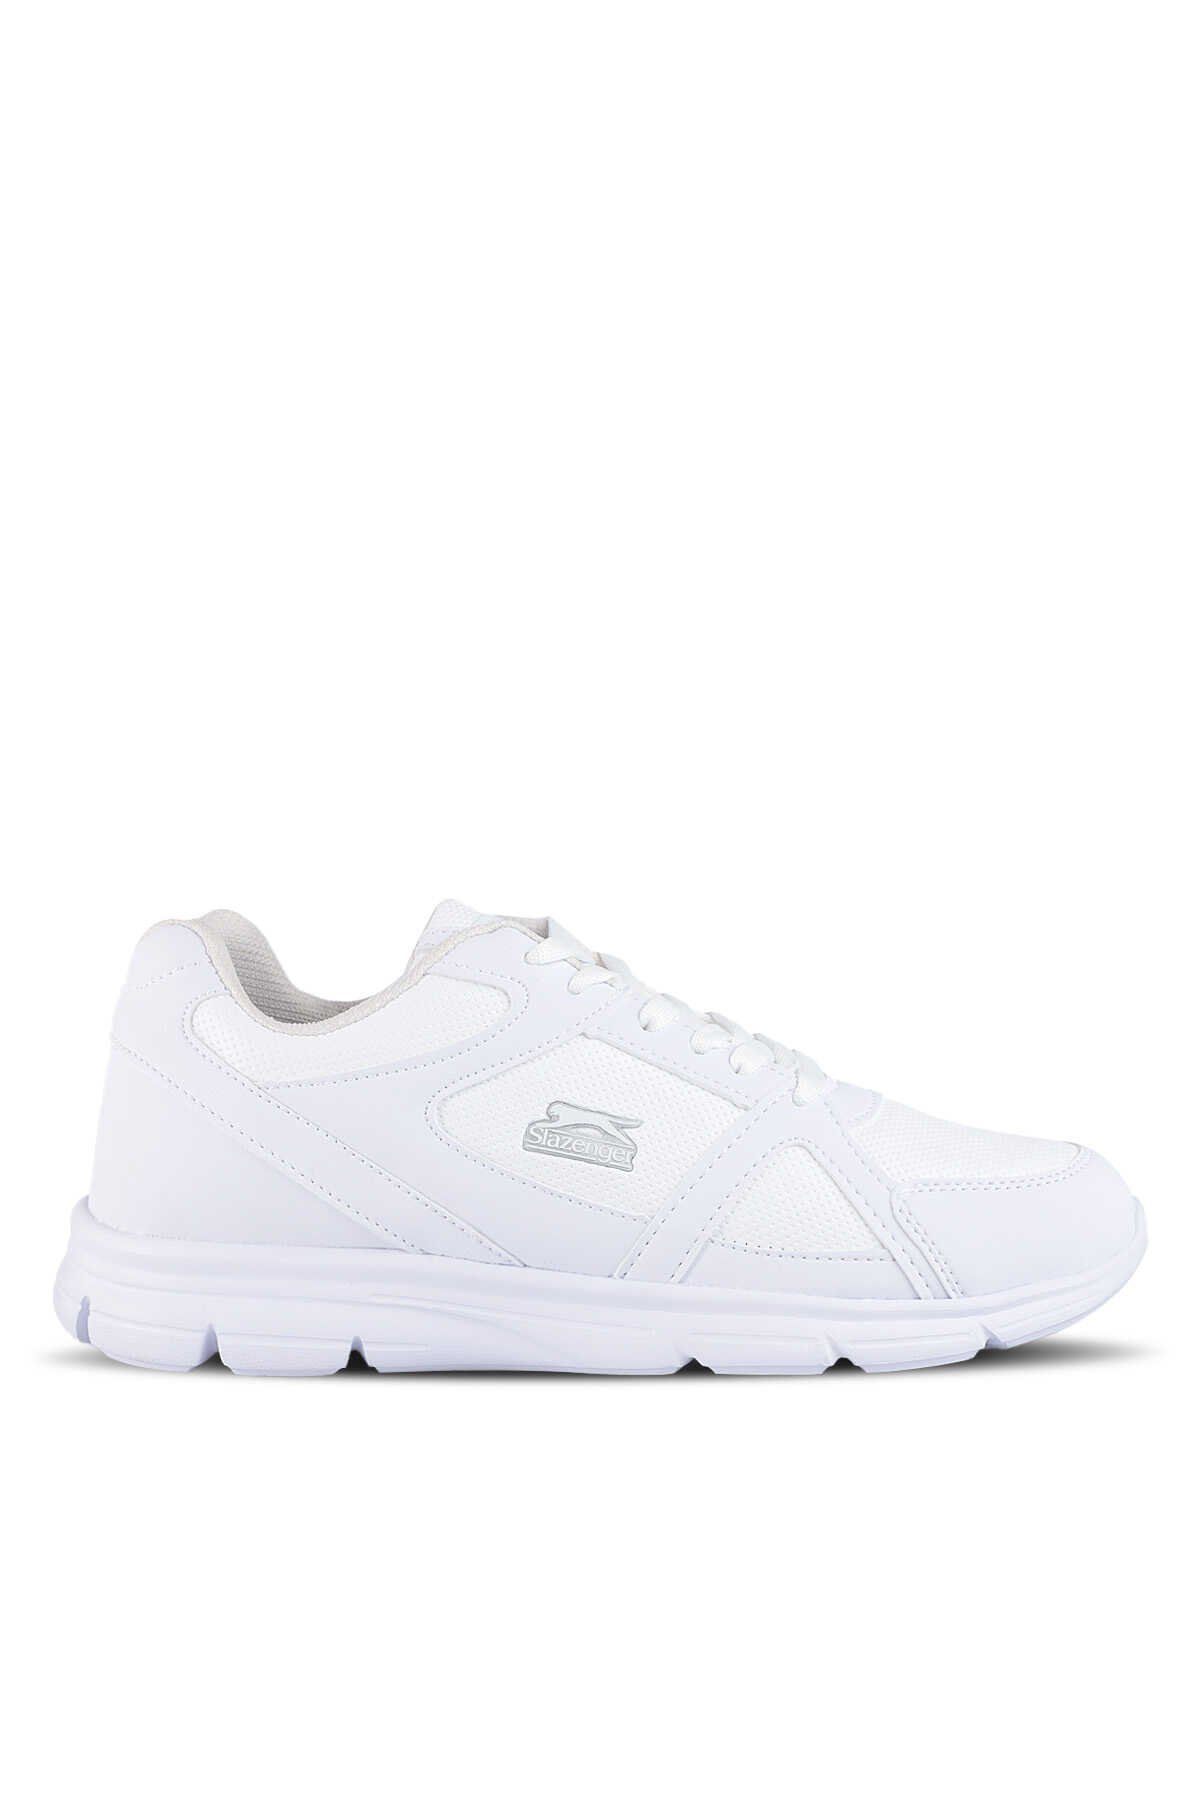 Slazenger - Slazenger PERA Sneaker Erkek Ayakkabı Beyaz